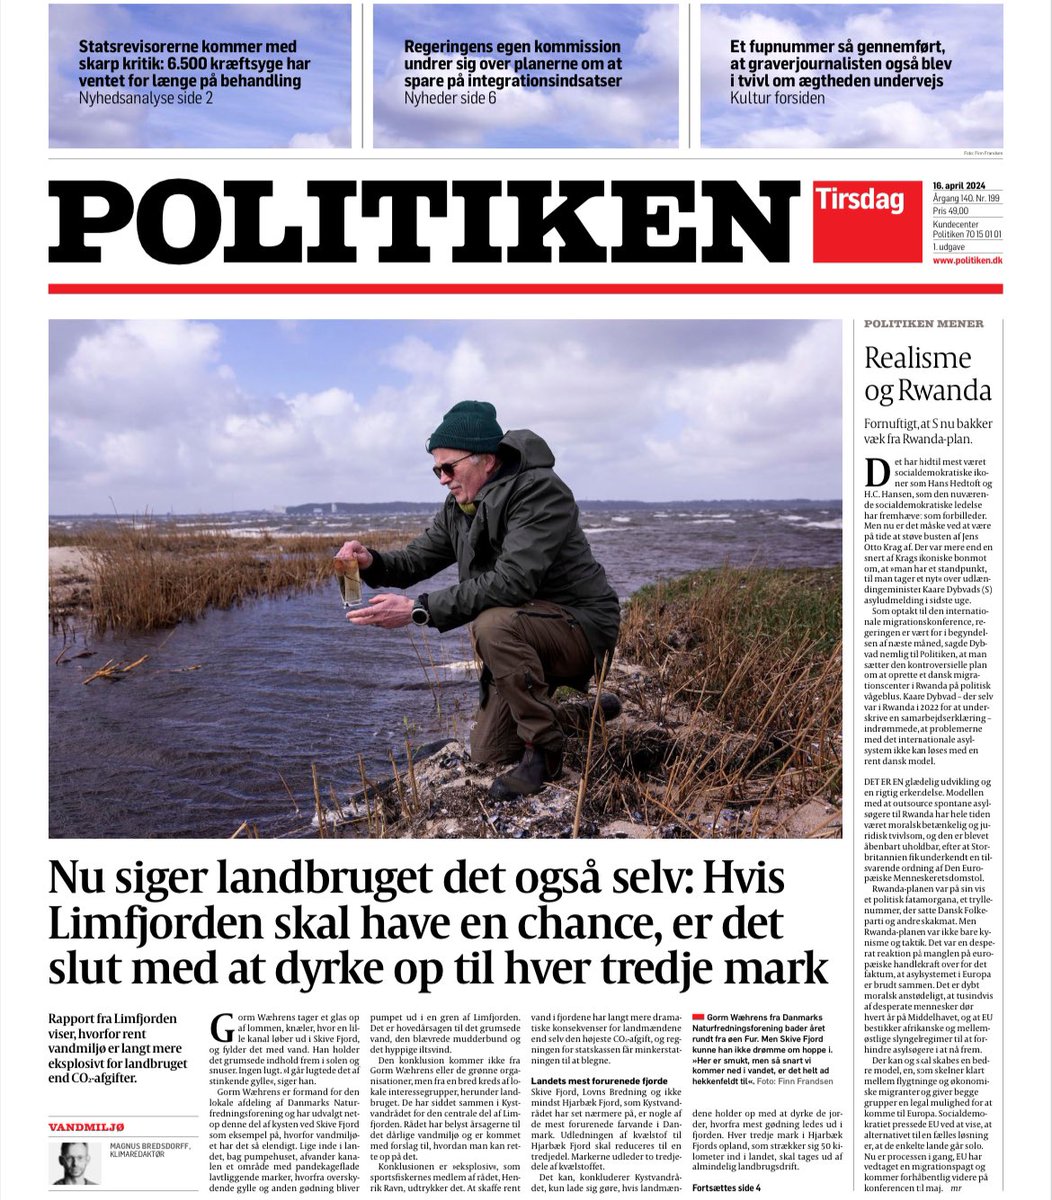 Så er lokalformanden for DN Skive-Salling, Gorm Wæhrens, på forsiden af Politiken med budskabet: Red Limfjorden og udtag store arealer fra dyrkning. Her i fint samspil med de lokale landboforeninger og politikere 👍